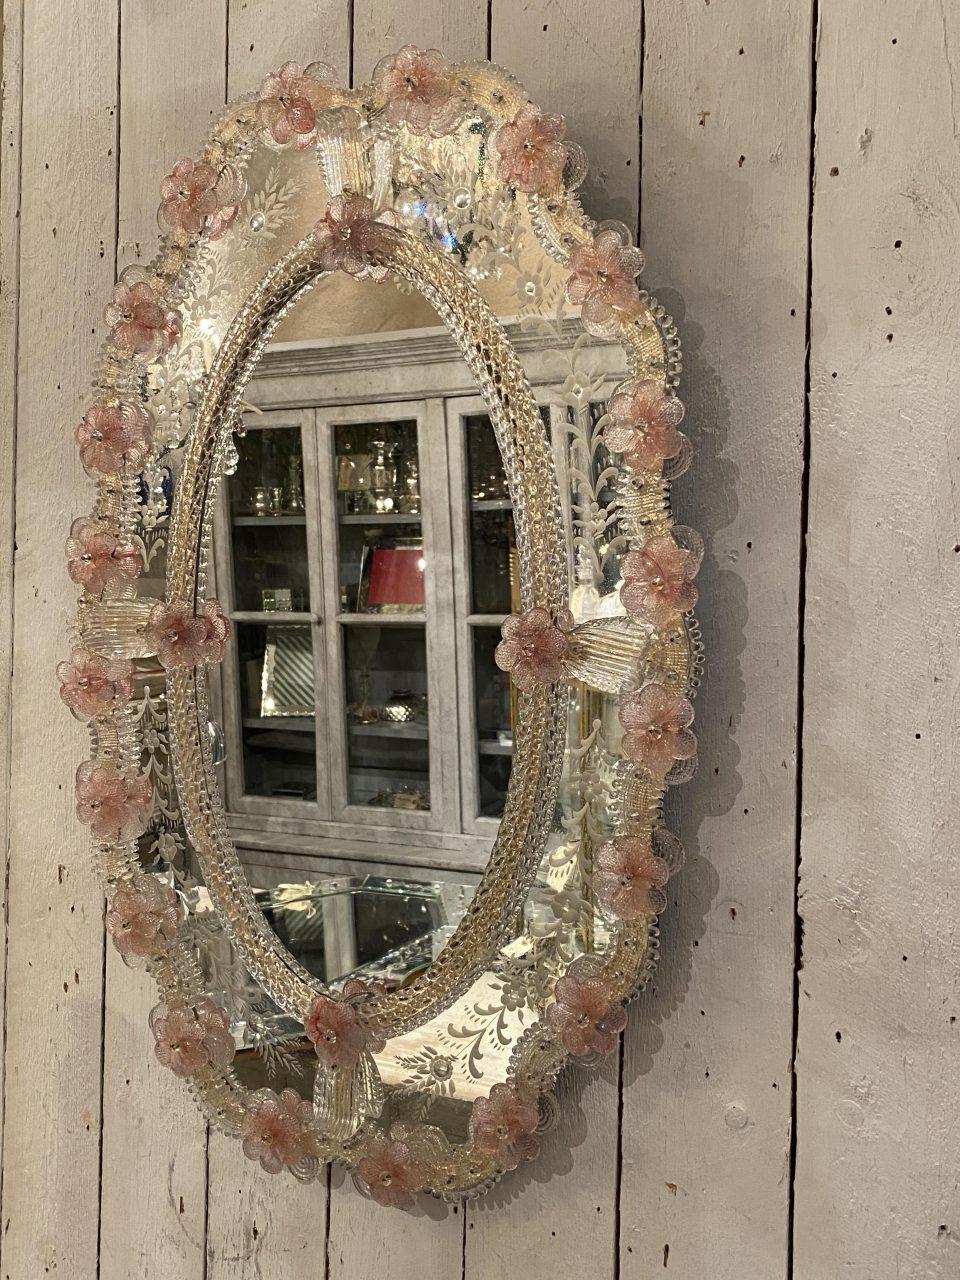 Miroir mural ovale exquis, rêveur, délicat et féminin, de style vénitien, datant des années 1920-40 en France.

Un cadre sophistiqué en verre vénitien et avec d'adorables petits ornements en verre transparent et des fleurs/rosettes en verre rose